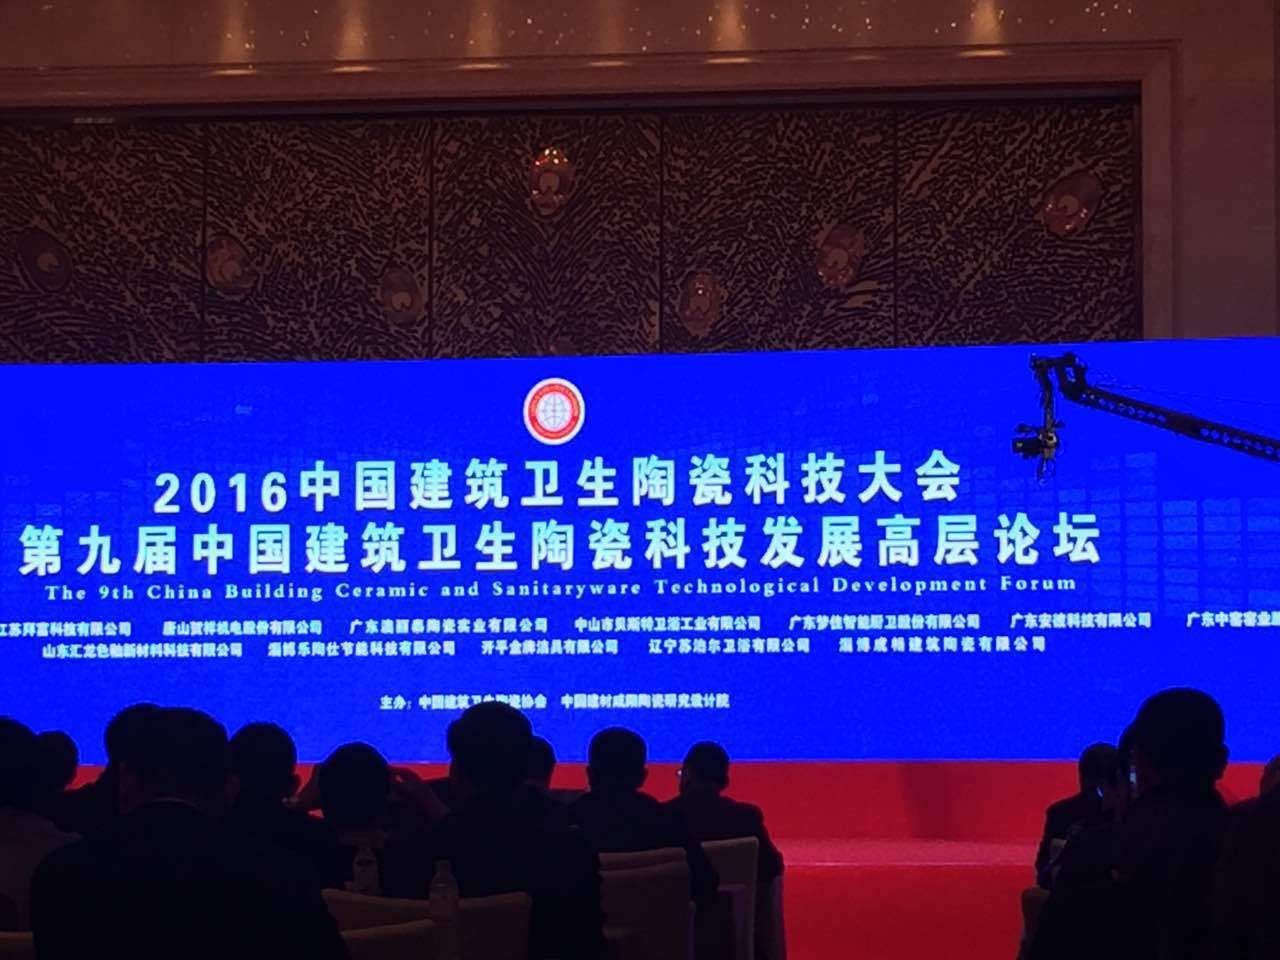 金太阳锆业受邀参加第九届中国建筑卫生陶瓷科技发展高层论坛